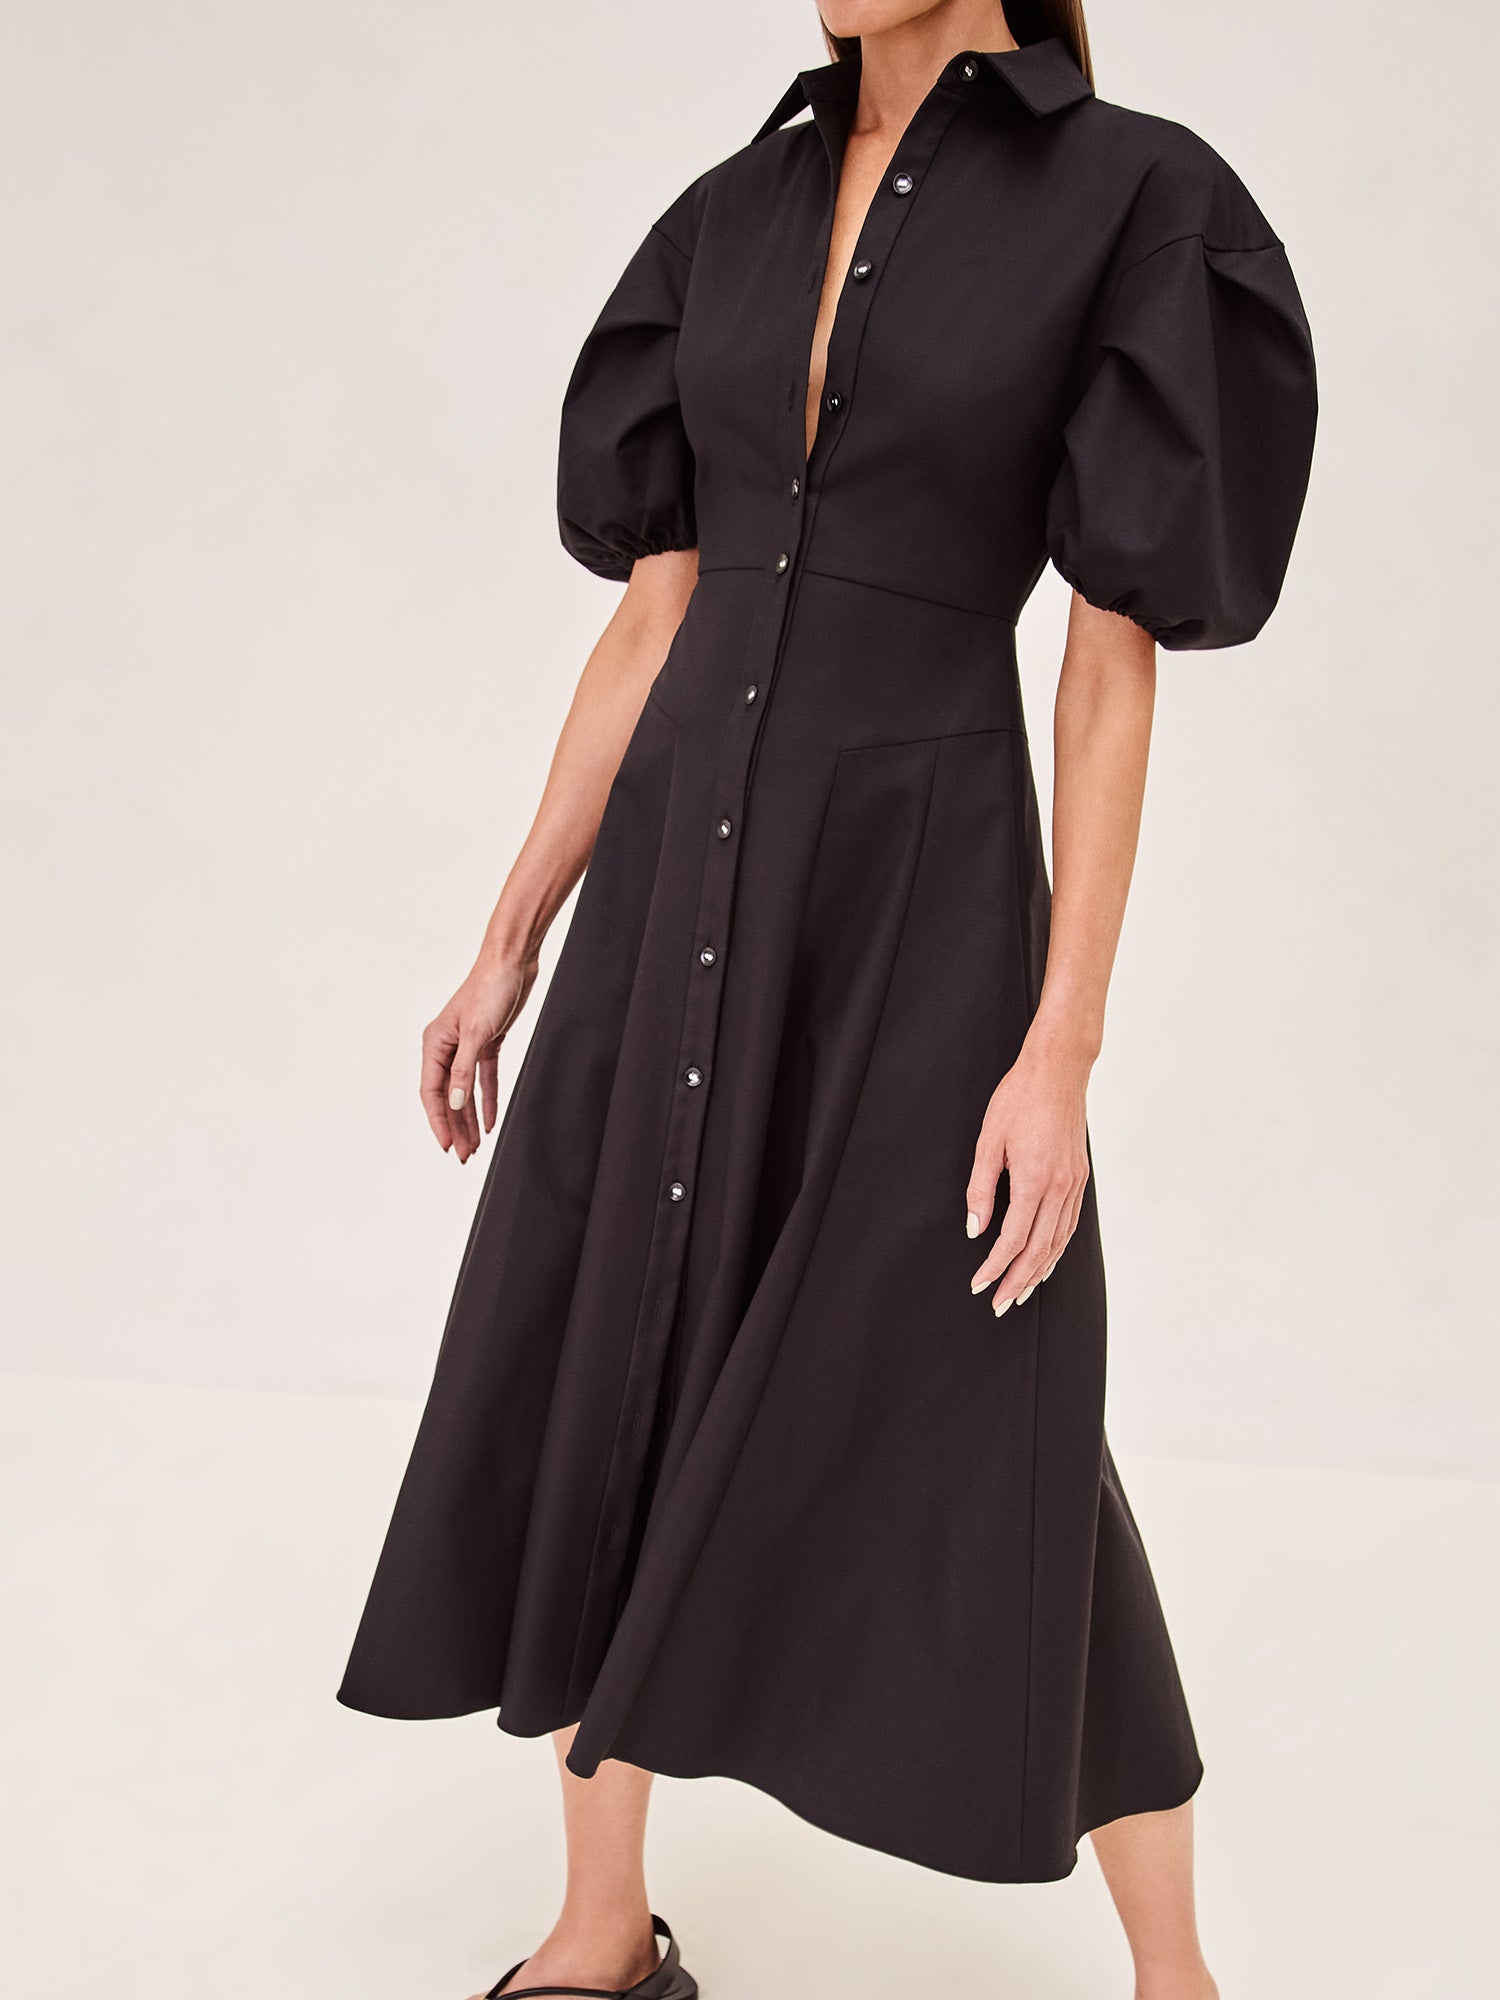 Alexis Amilya Midi Dress in black hover image